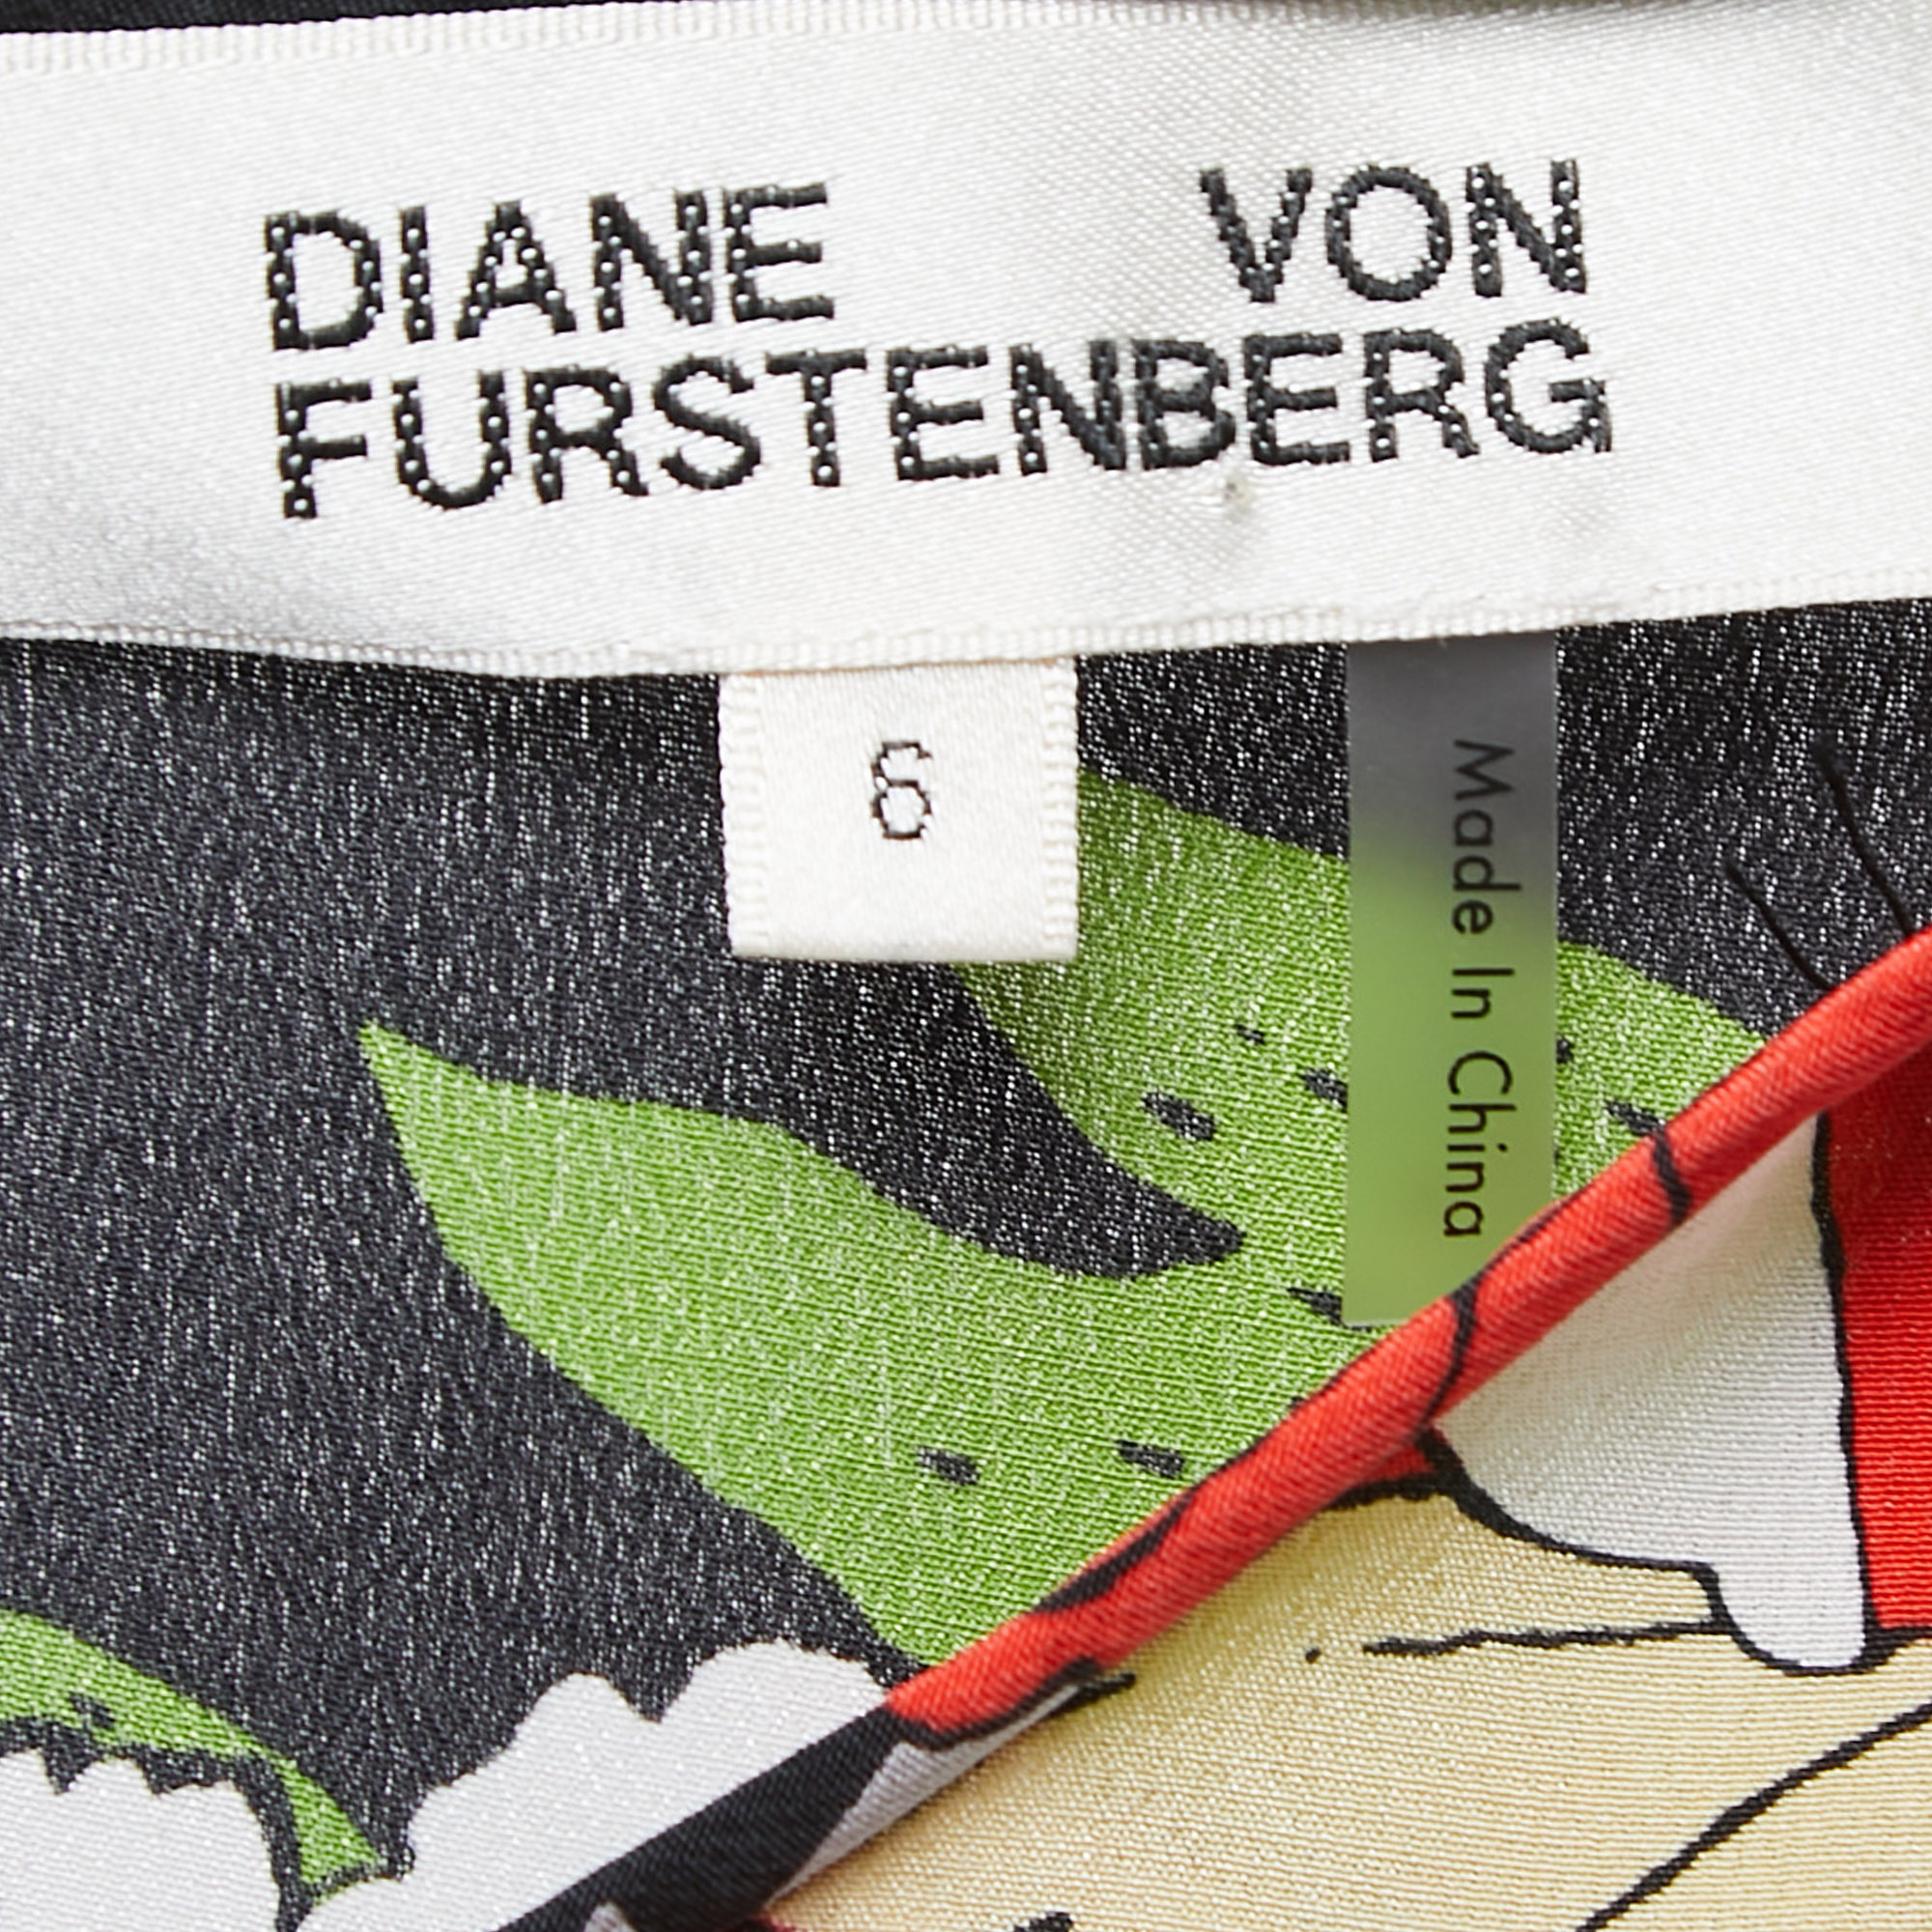 Diane Von Furstenberg Red/Black Floral Printed Silk Short Sleeve Boxy Blouse M